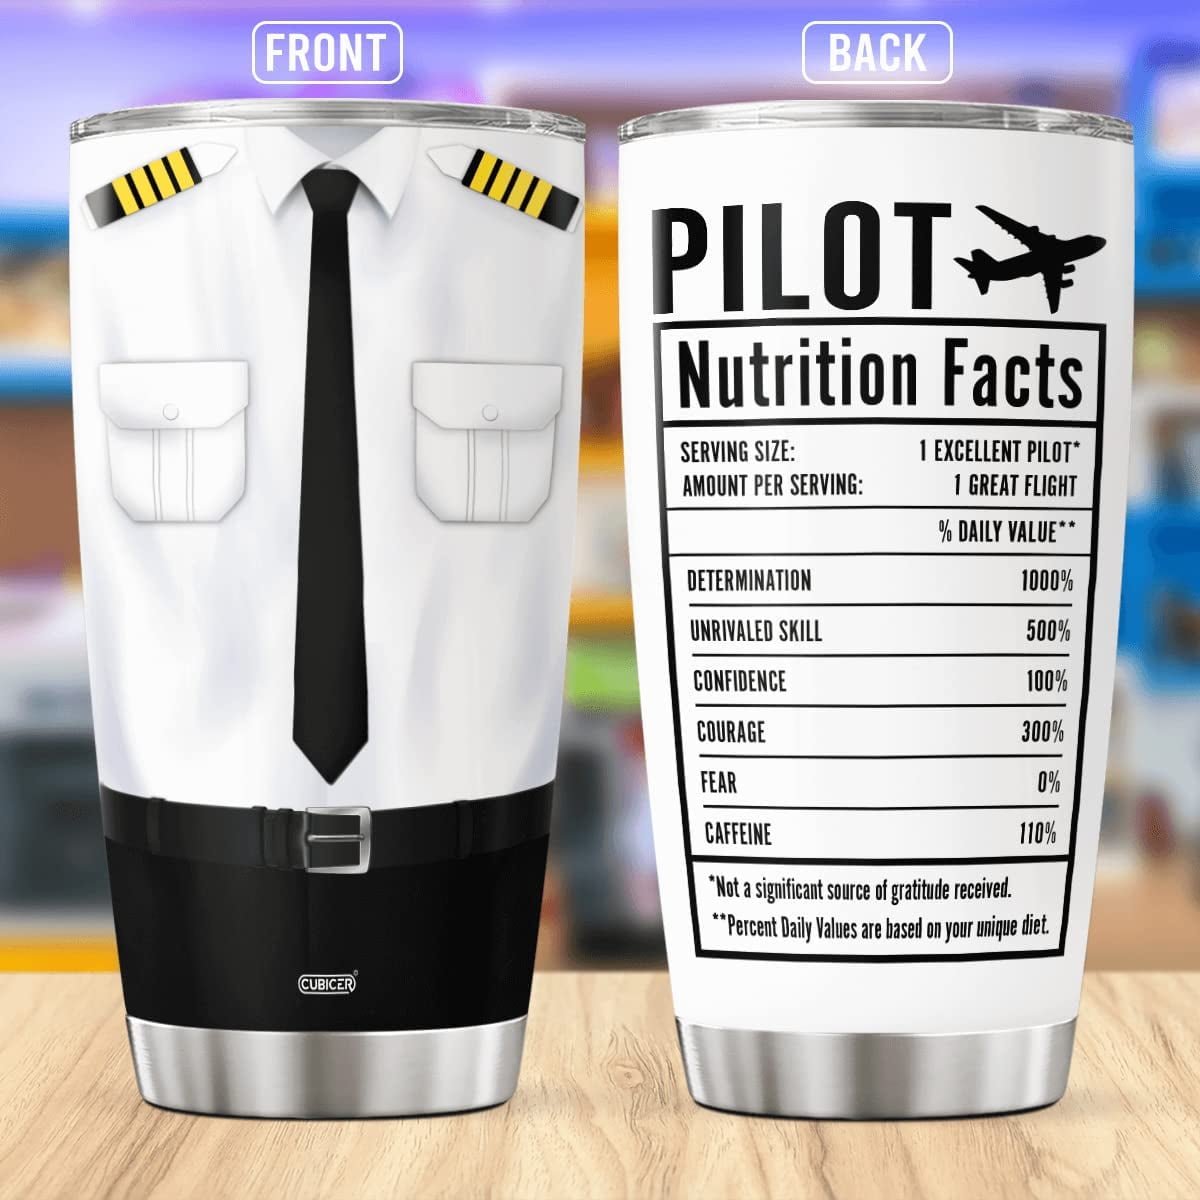 Flight Sim Pilot Mug, Funny Flight Simulator Coffee Mugs, Tumbler